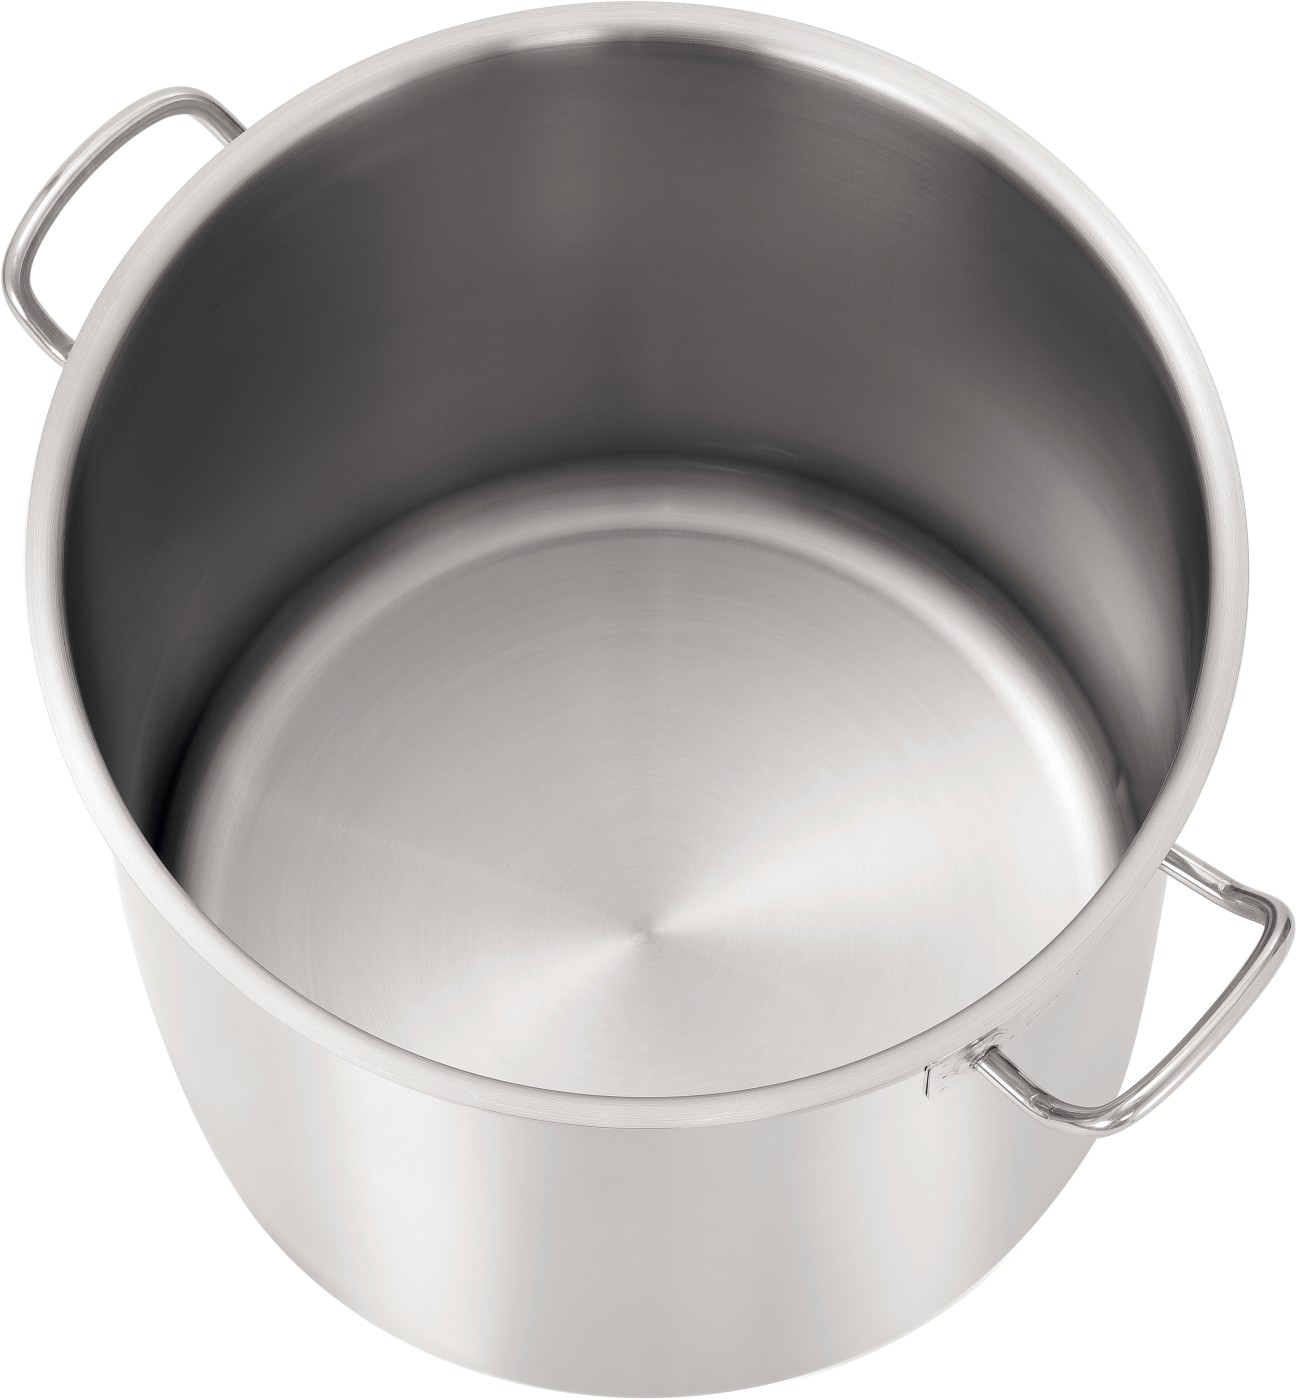  Bartscher Cooking pot 70L-D380 